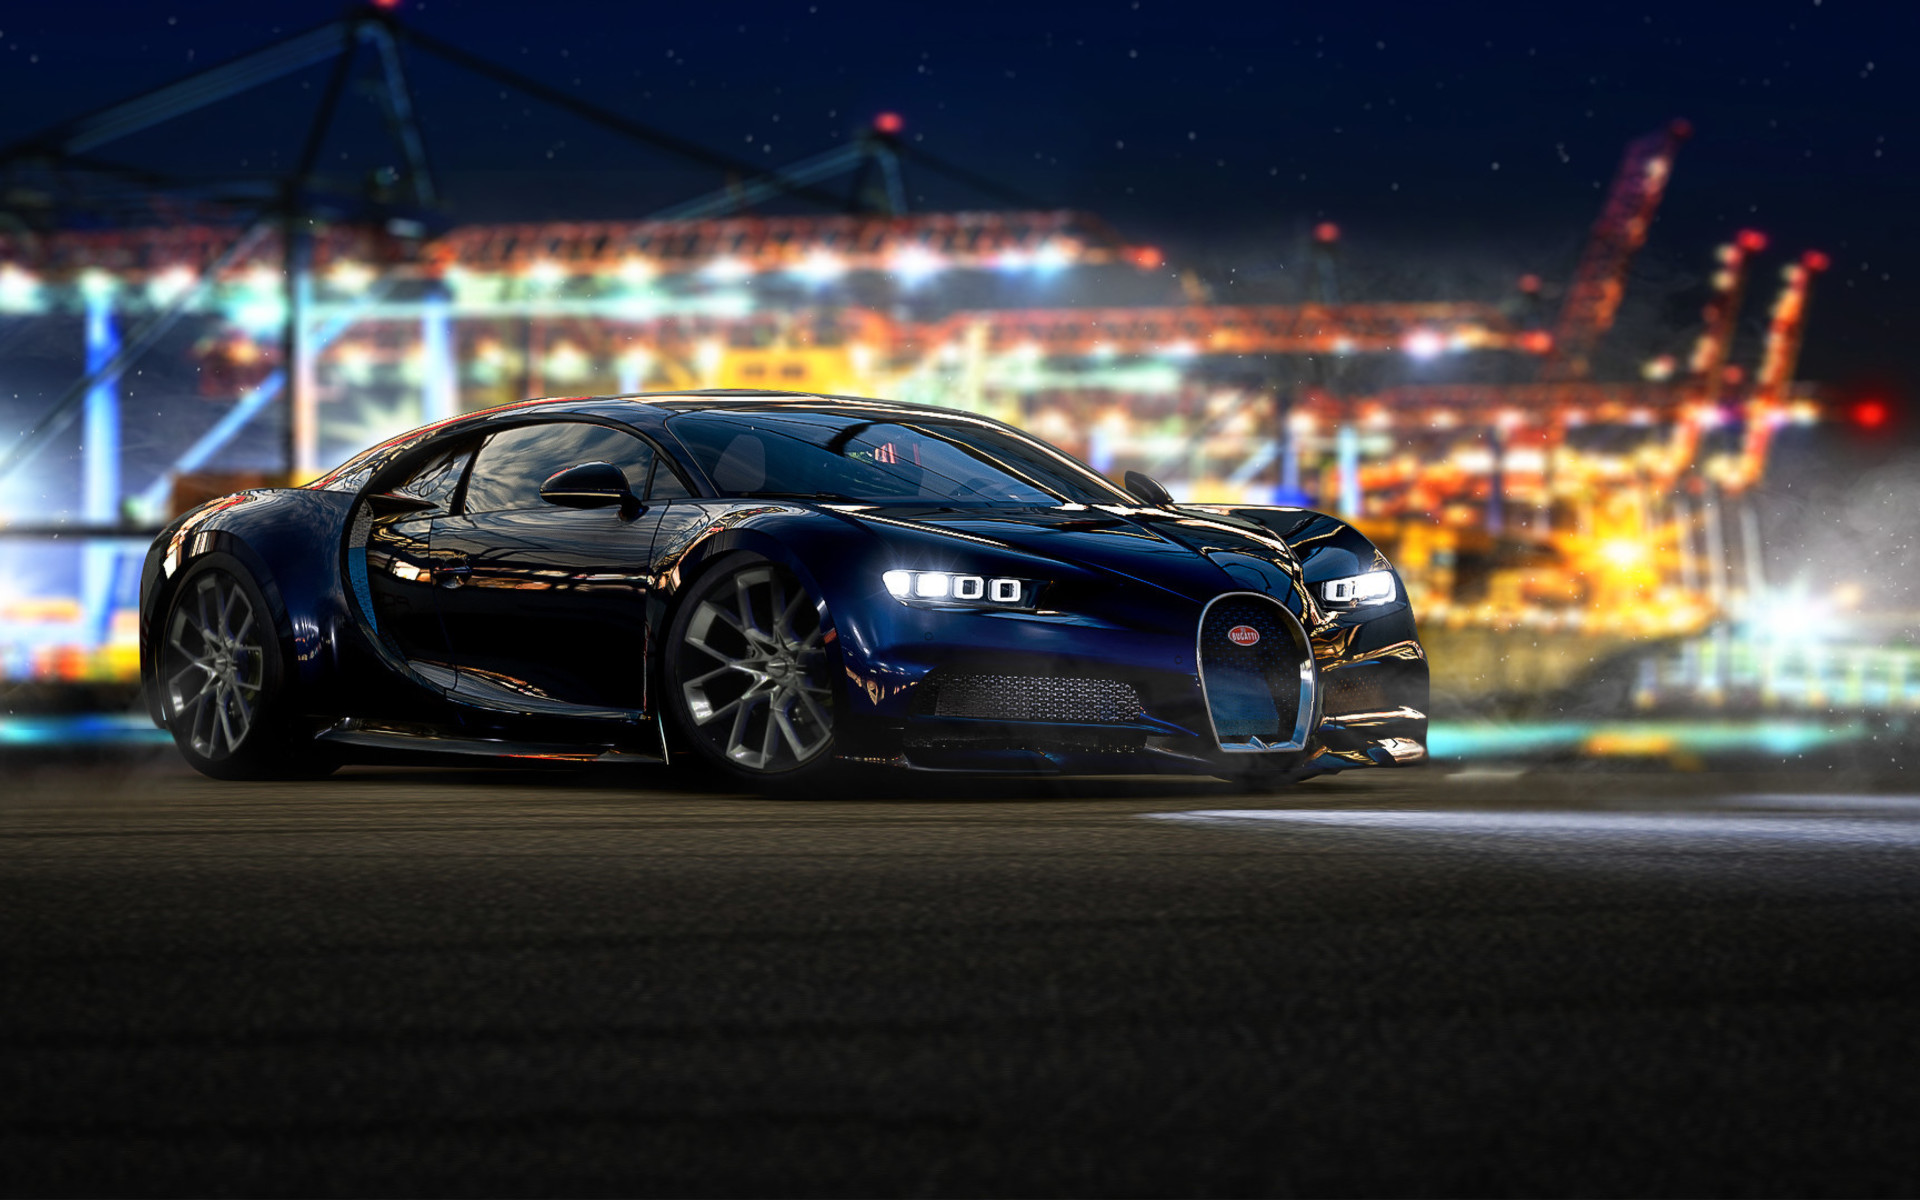 Forza Horizon 4 Bugatti Chiron , HD Wallpaper & Backgrounds